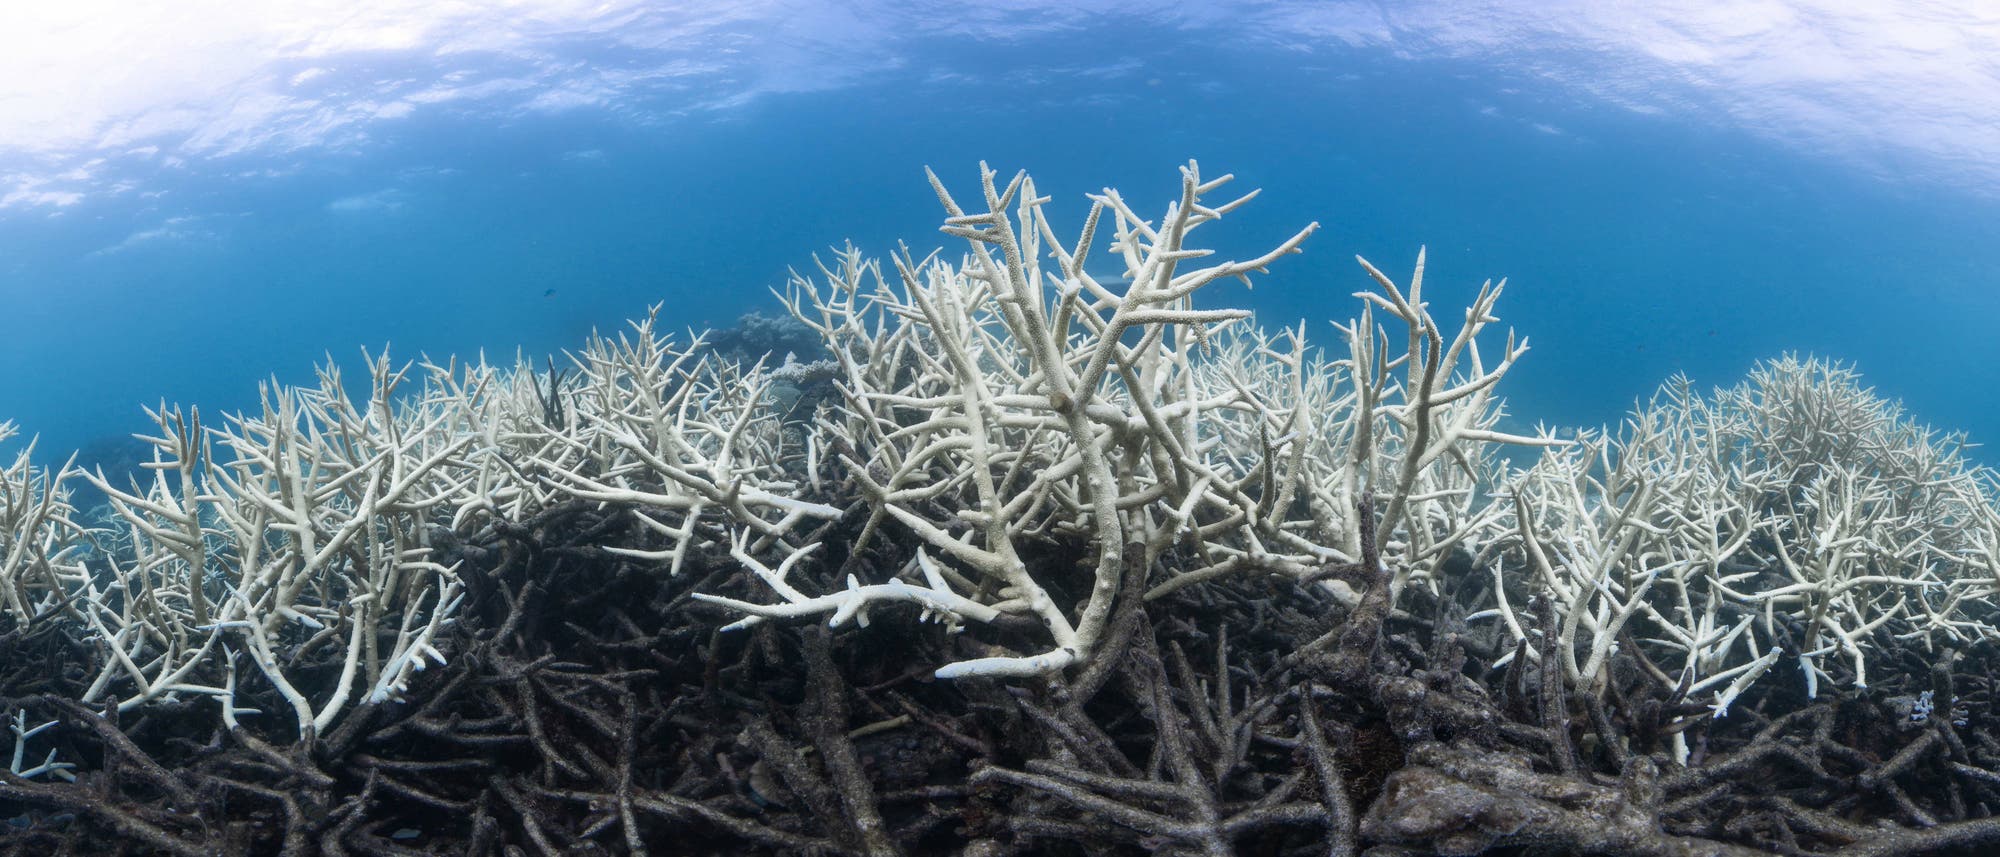 Todeszone im australischen Great Barrier Reef